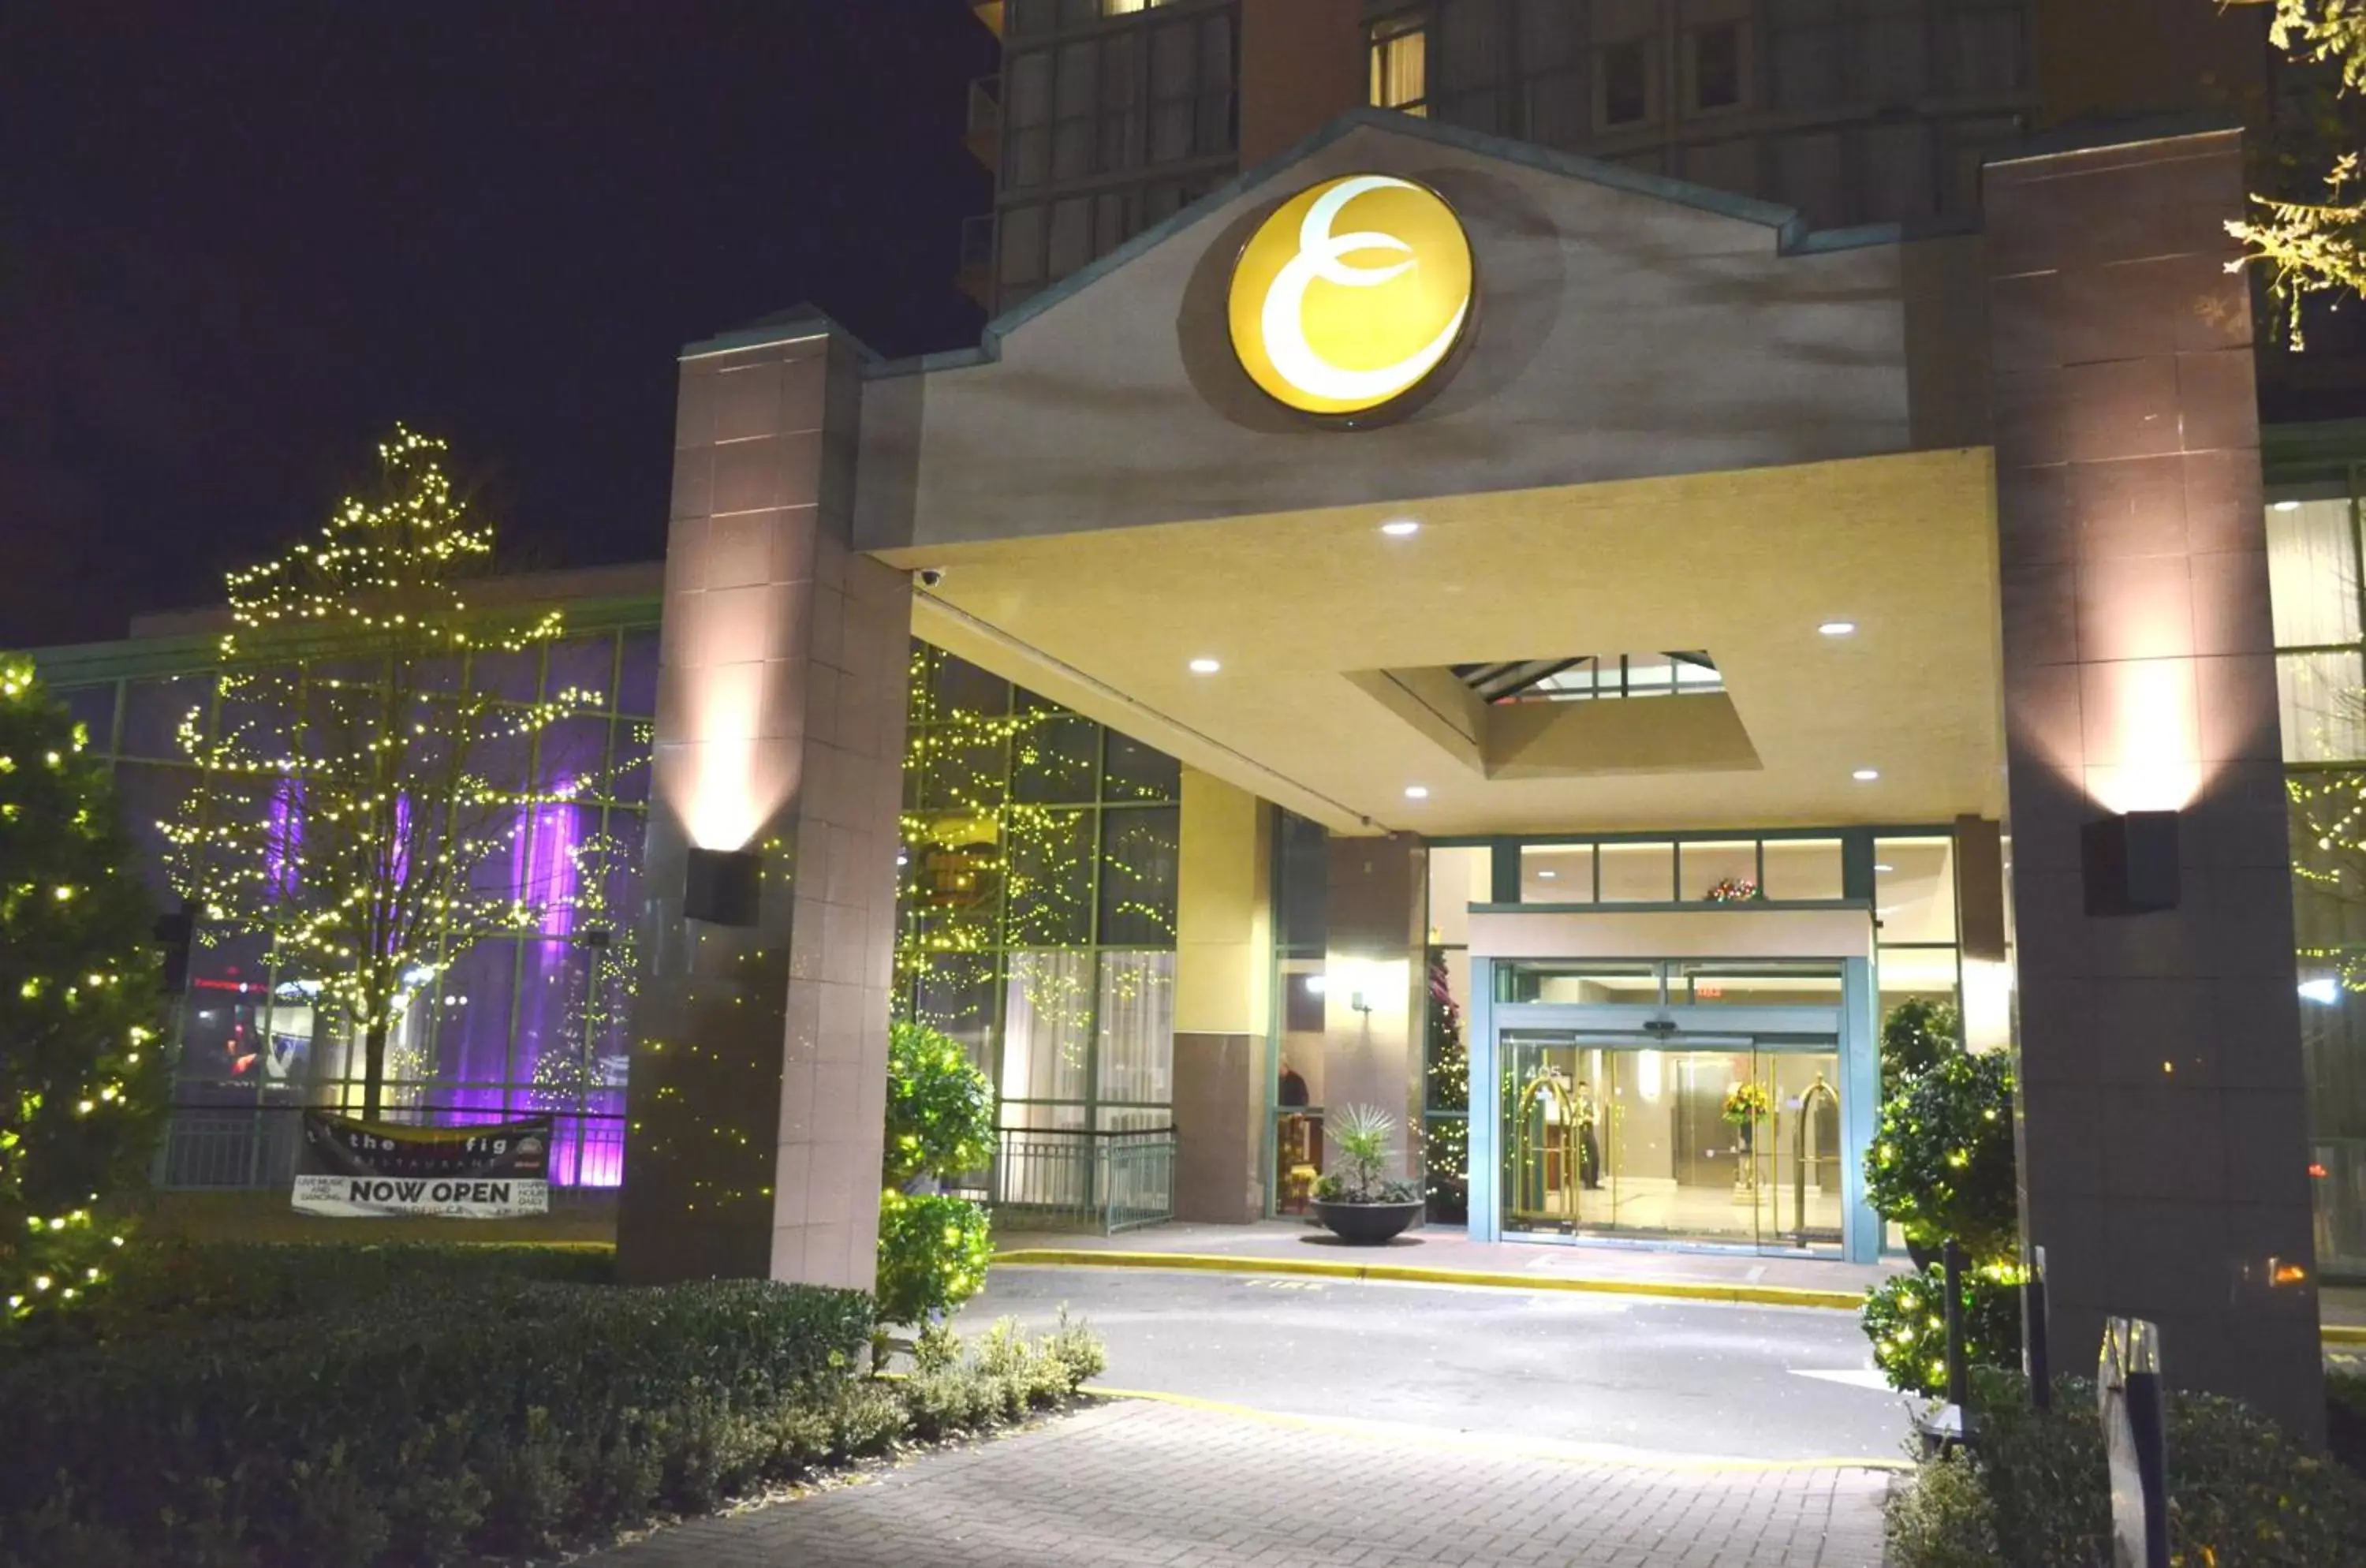 Facade/entrance in Executive Plaza Hotel & Conference Centre, Metro Vancouver